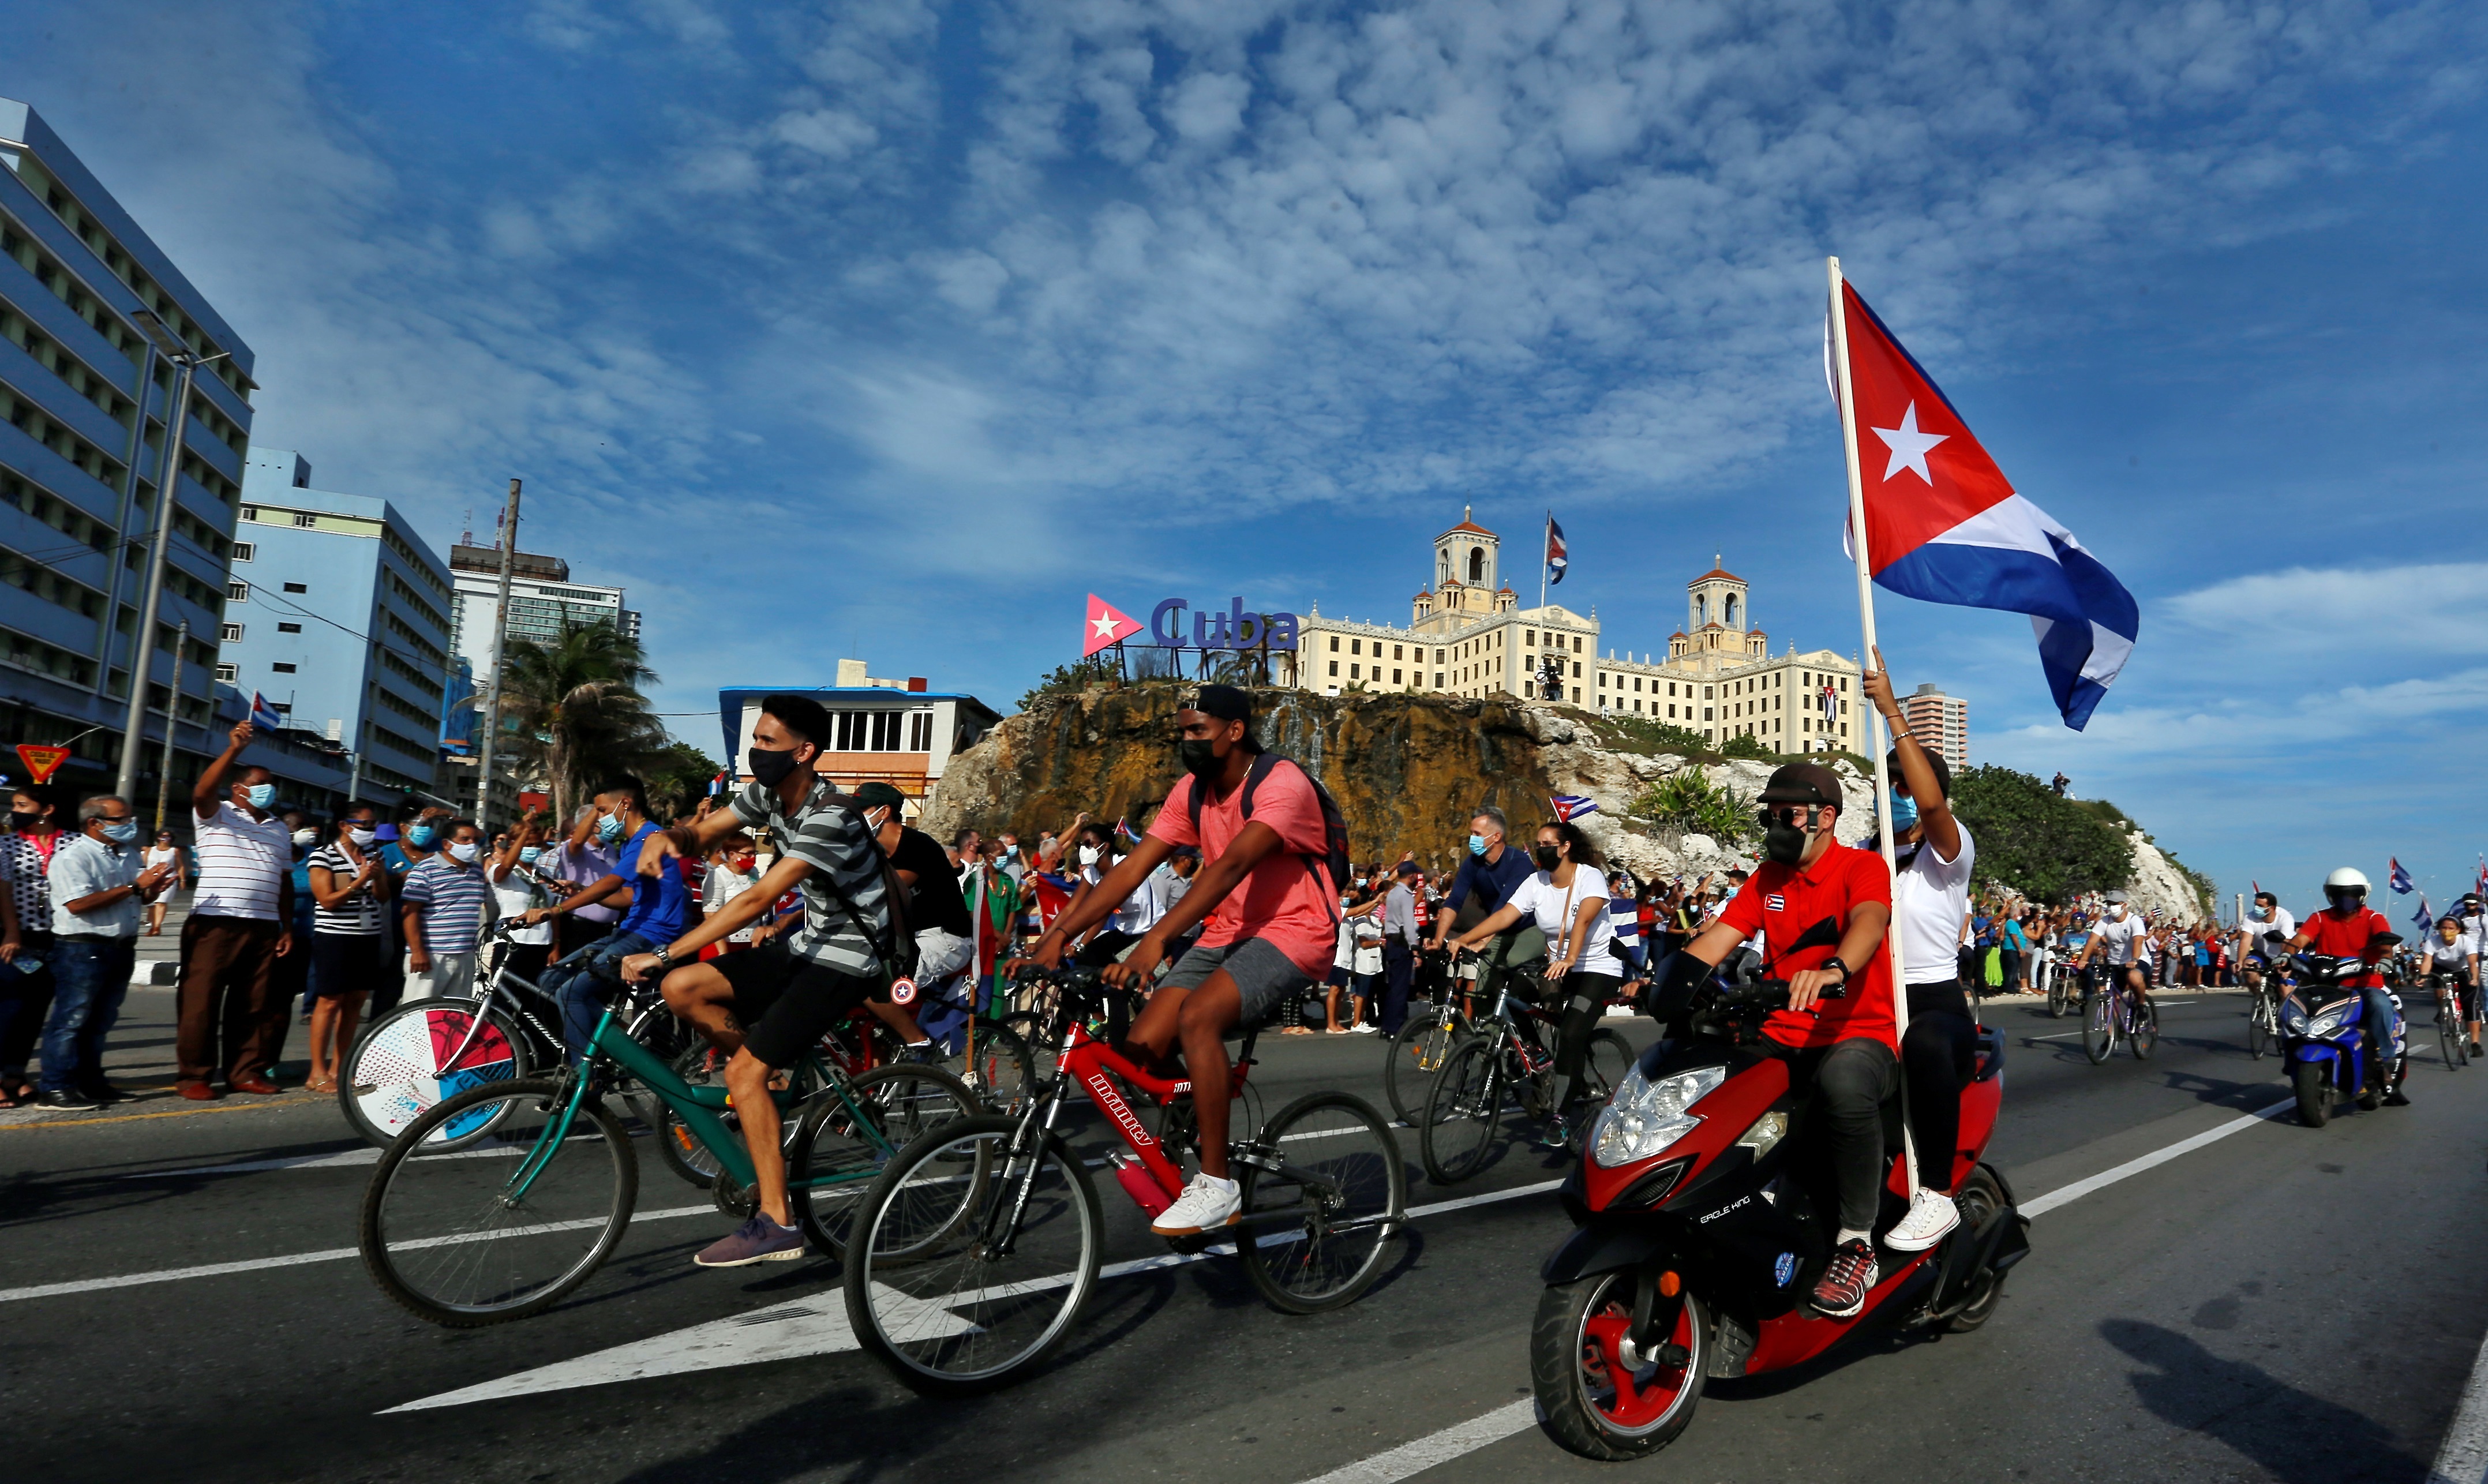 Imagen de archivo de cientos de cubanos que participan de una manifestación en La Habana (Cuba) (EFE/ Ernesto Mastrascusa)
